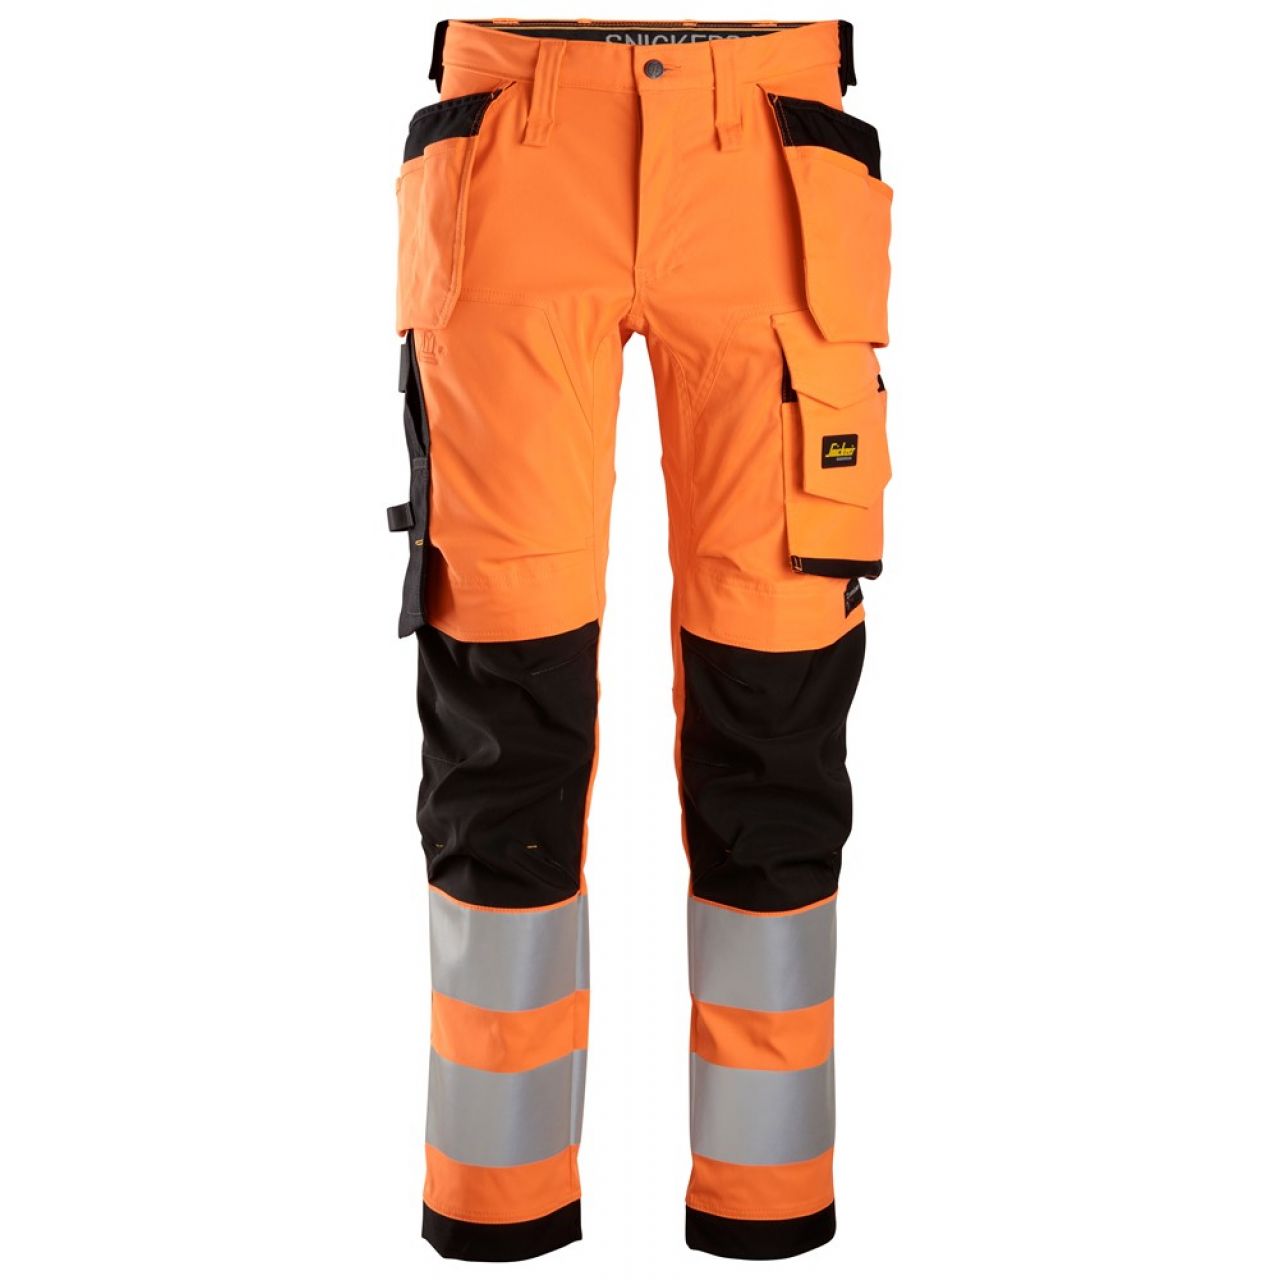 6243 Pantalones largos de trabajo elásticos de alta visibilidad clase 2 con bolsillos flotantes naranja-negro talla 56